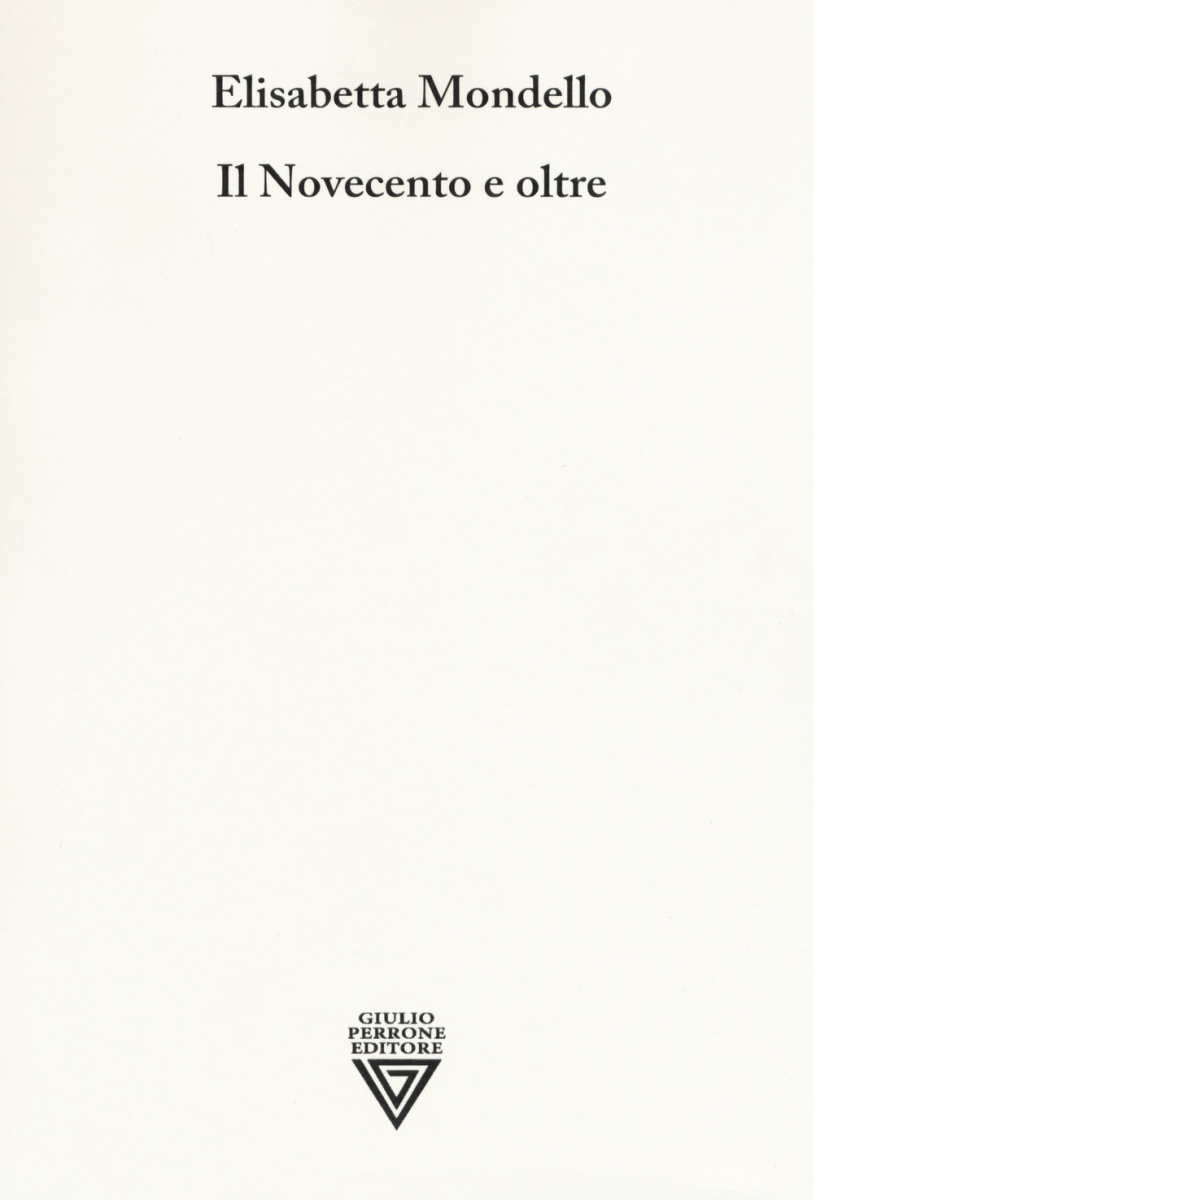 Il Novecento e oltre - Elisabetta Mondello - Perrone editore, 2019 libro usato